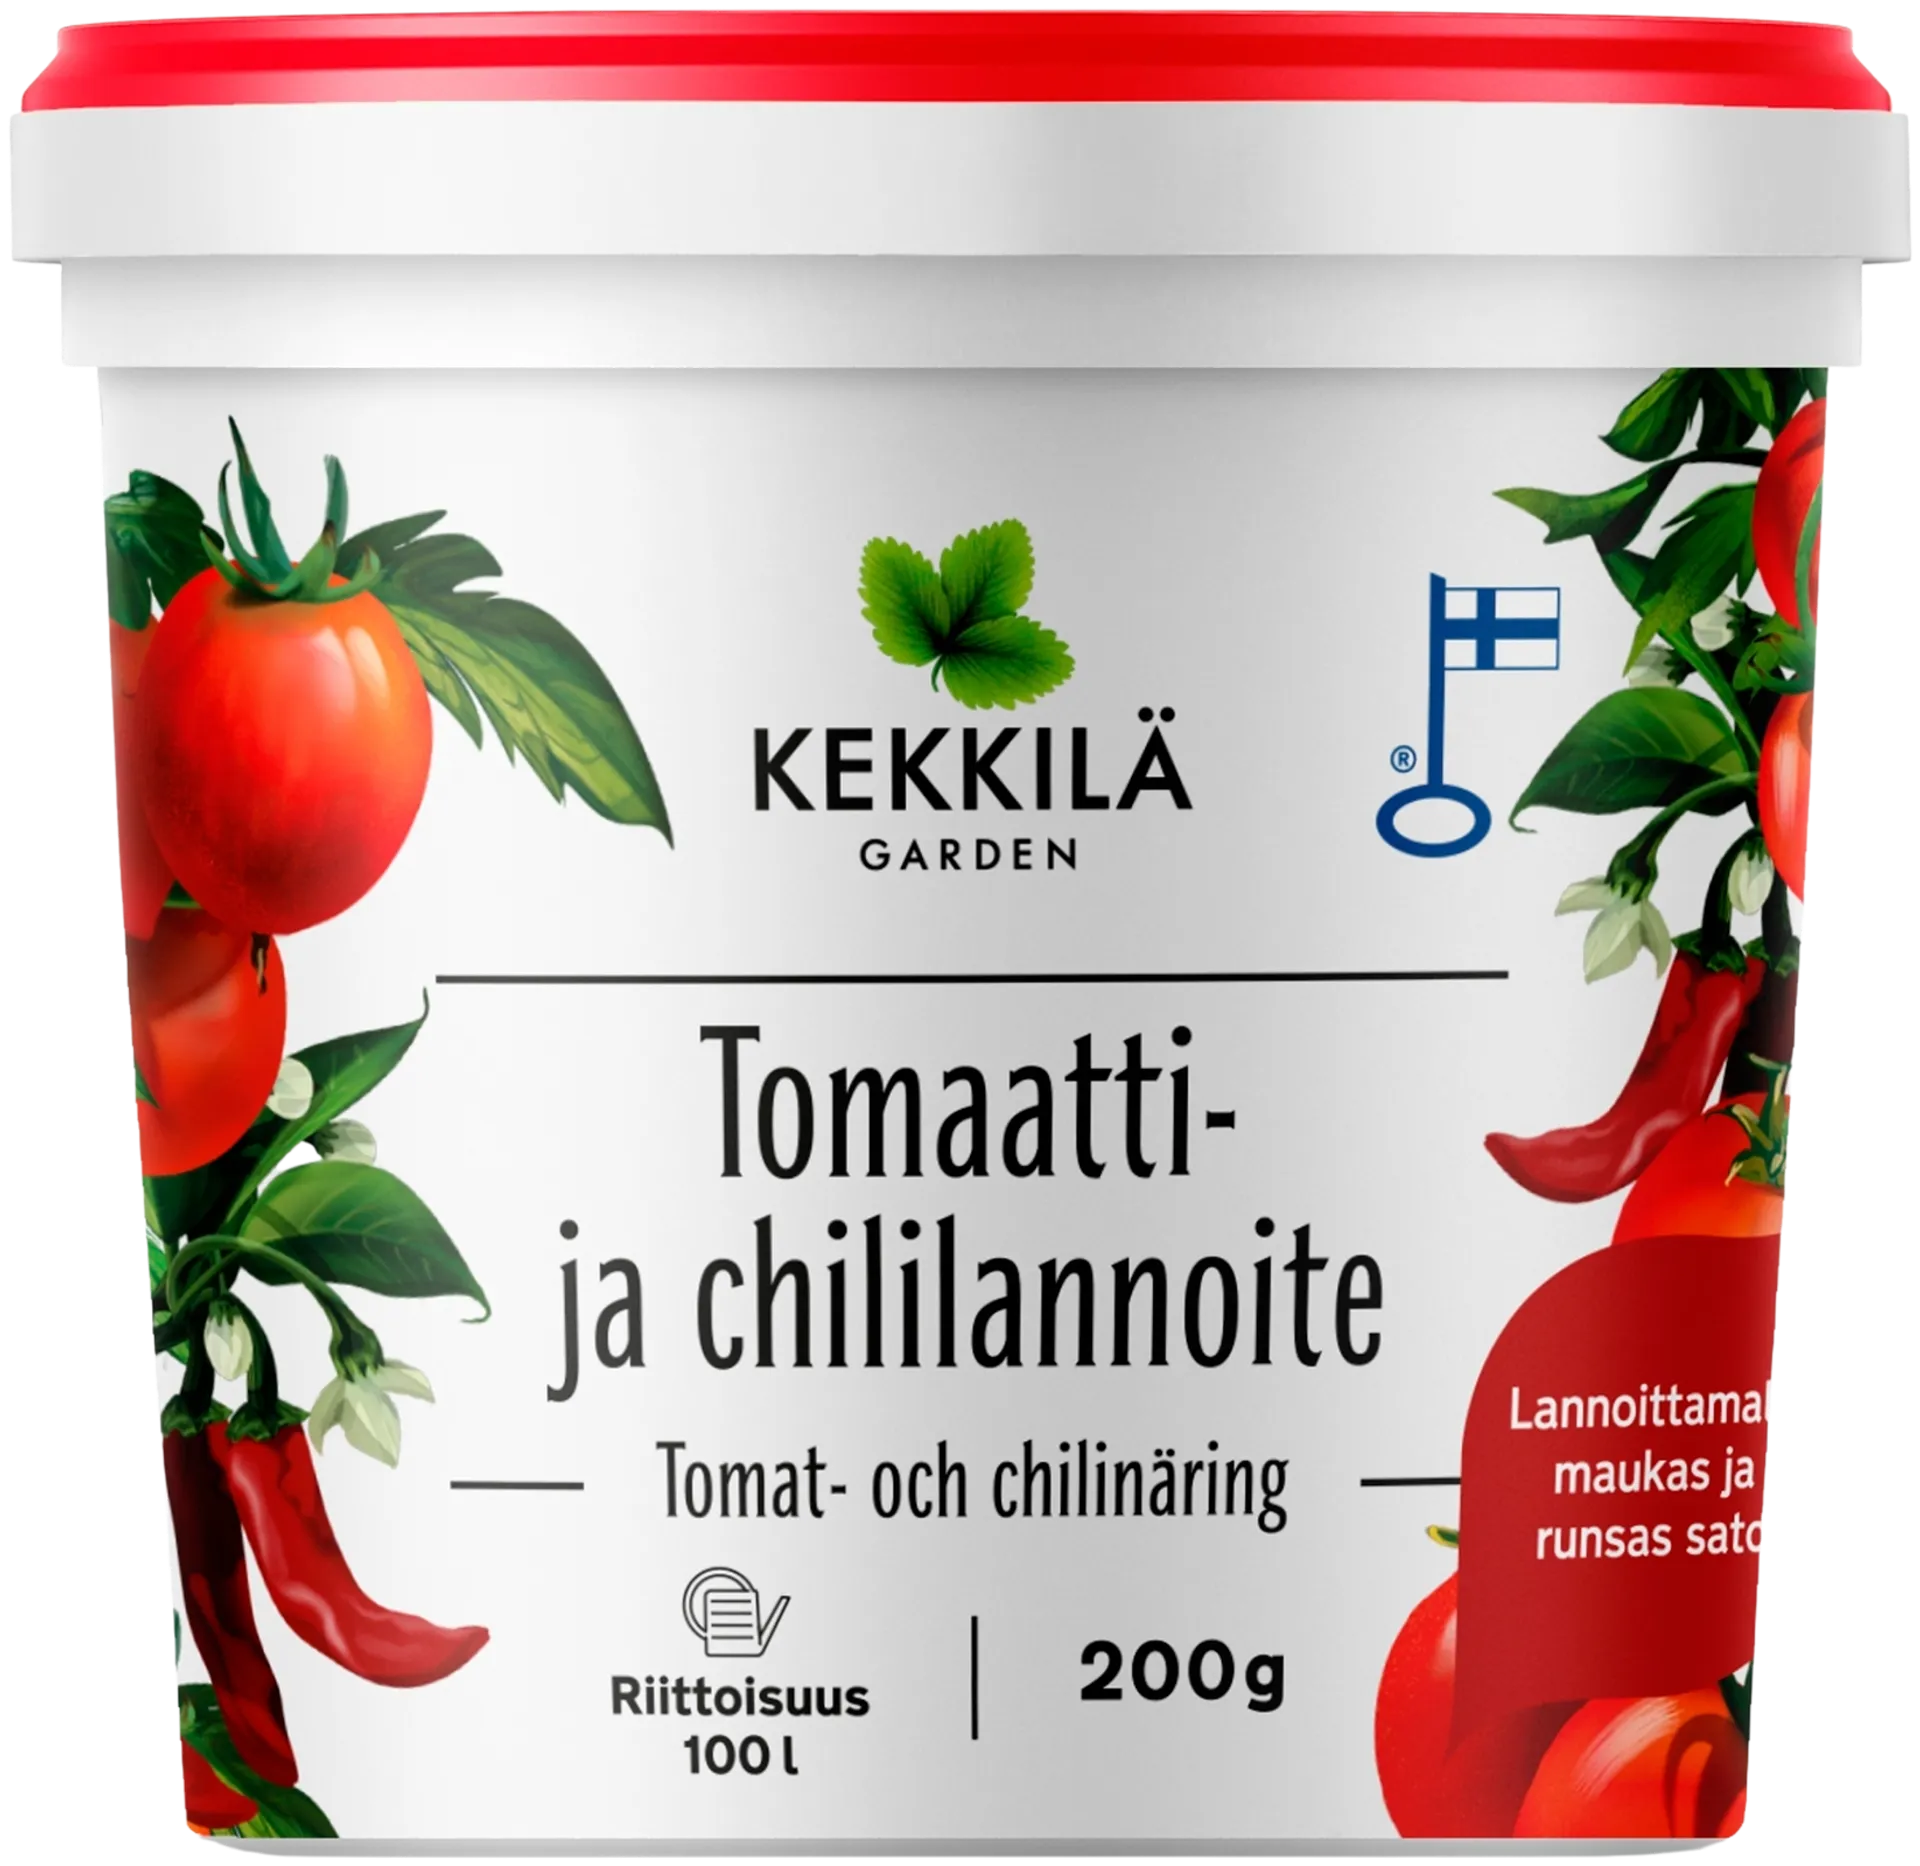 Kekkilä tomaatti- ja chililannoite 200 g - 1